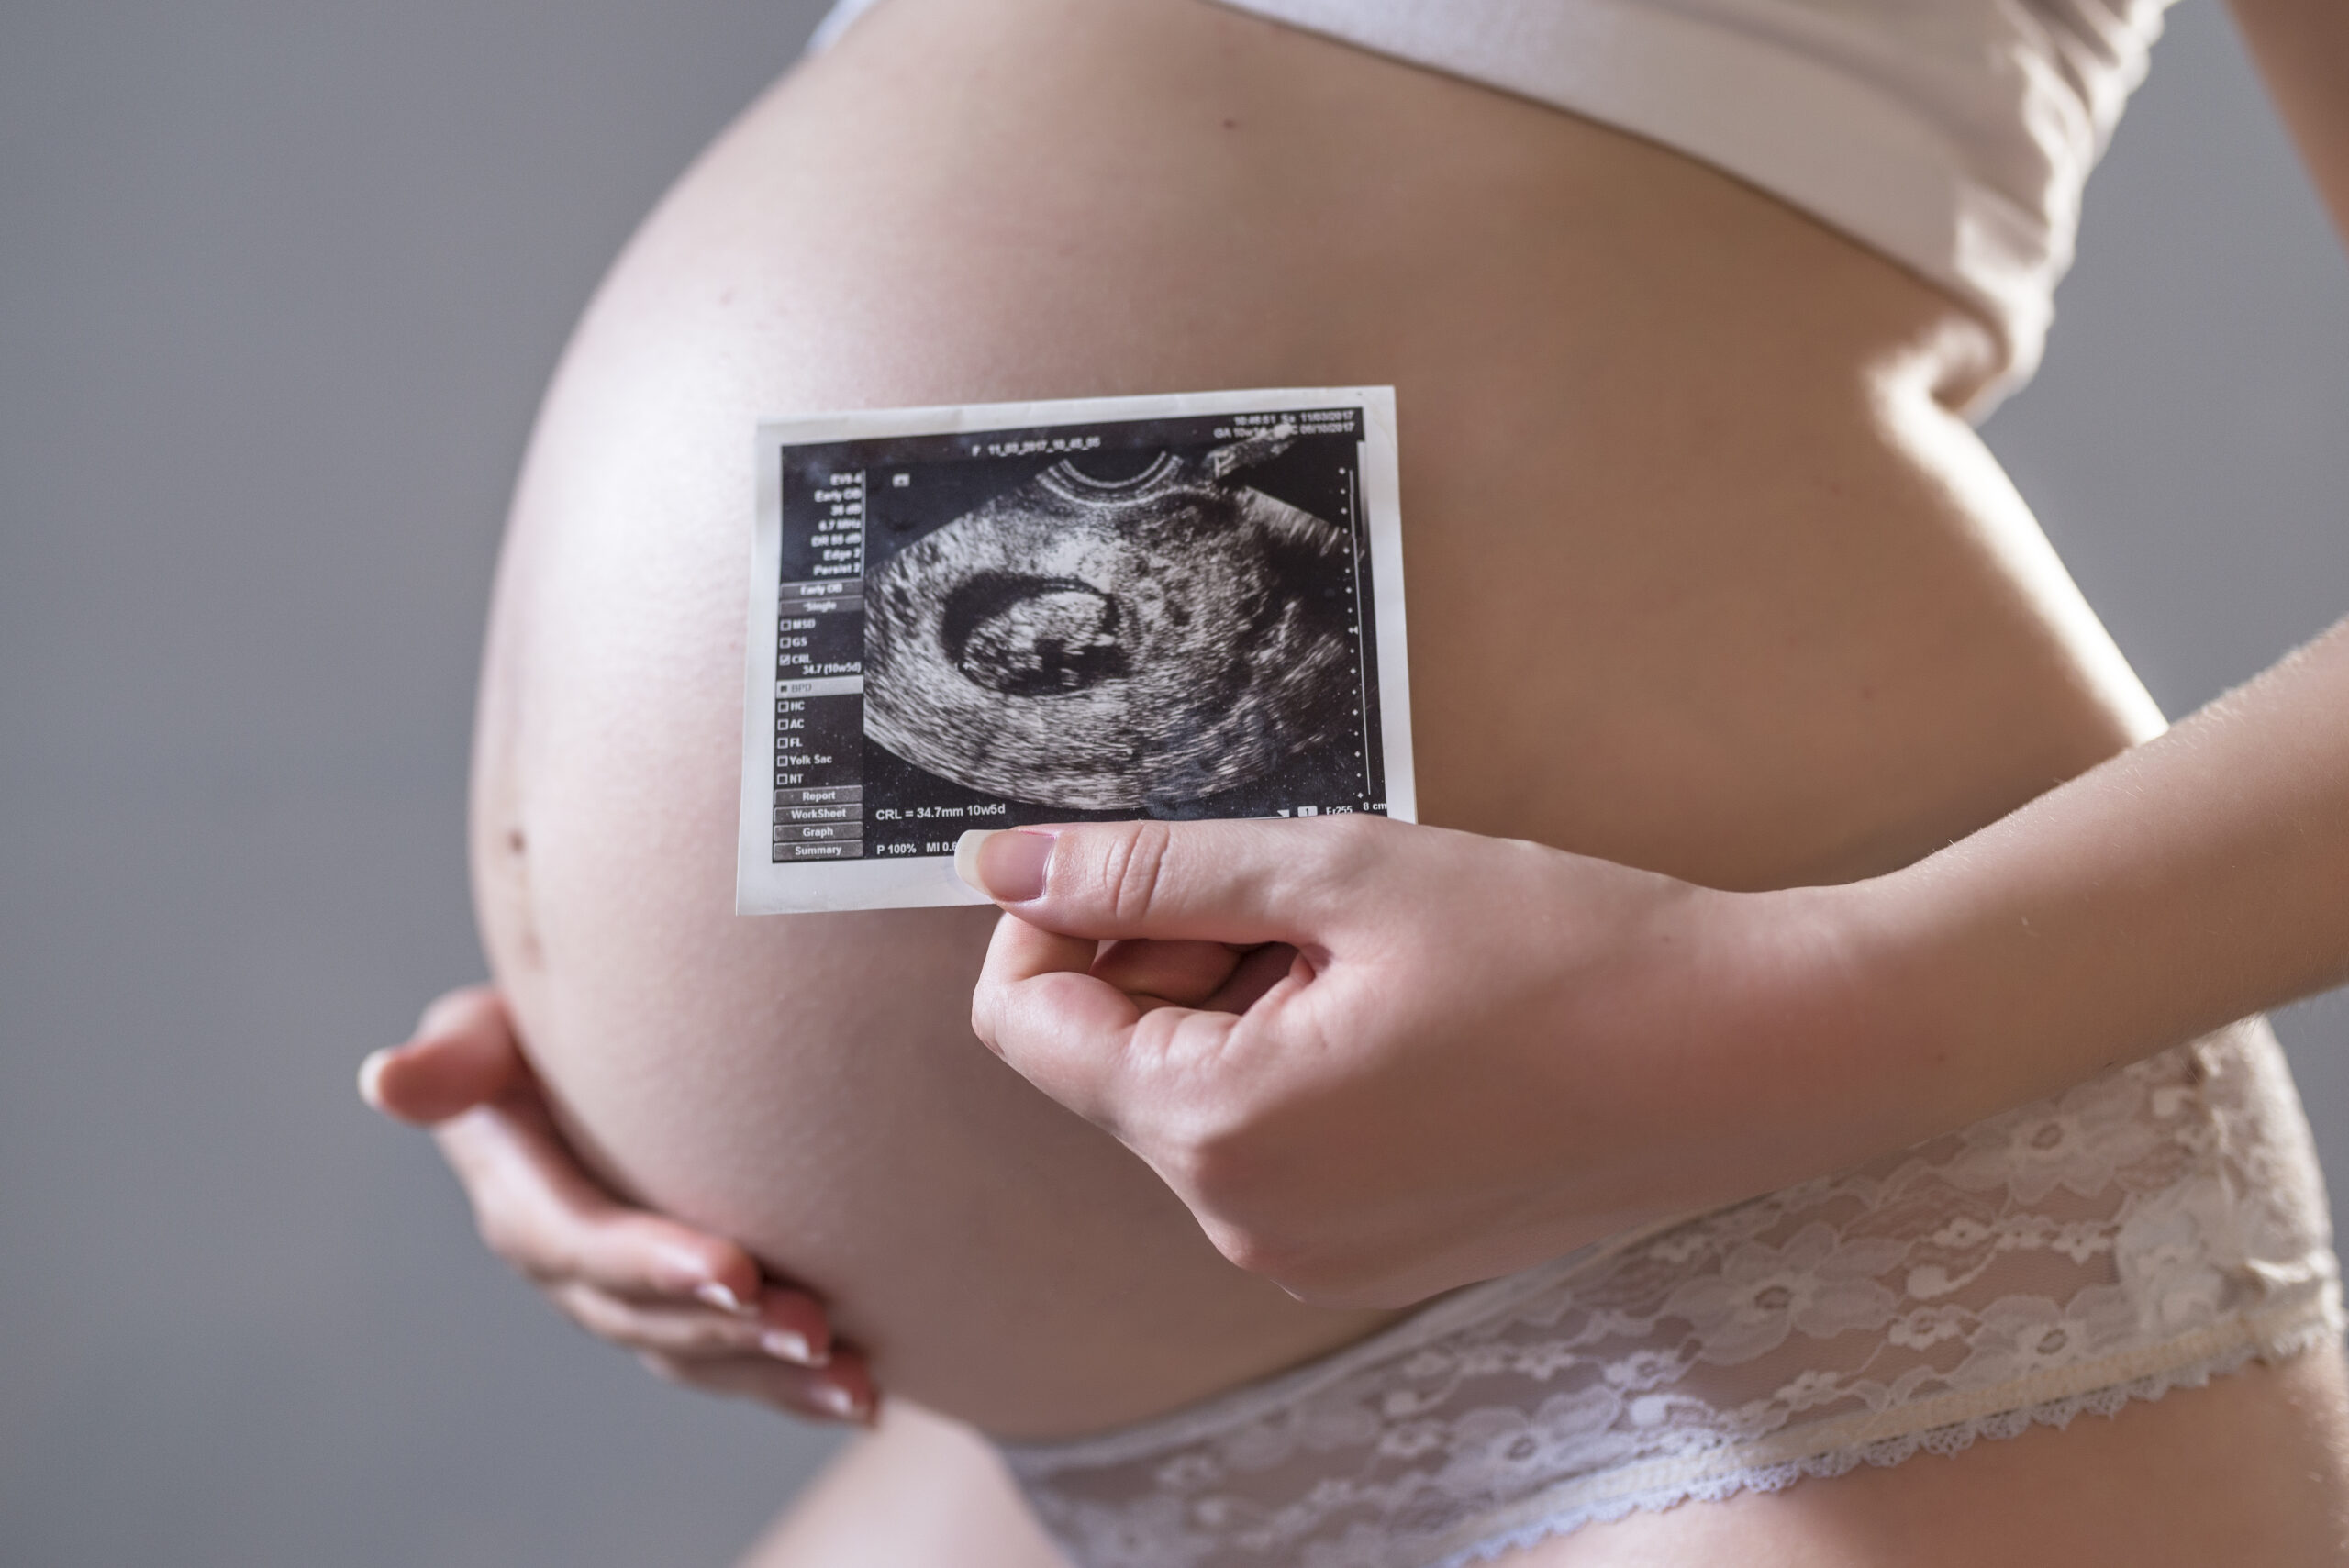 teste de gravidez Sintomas comuns podem indicar gravidez. Foto: Reprodução/Internet